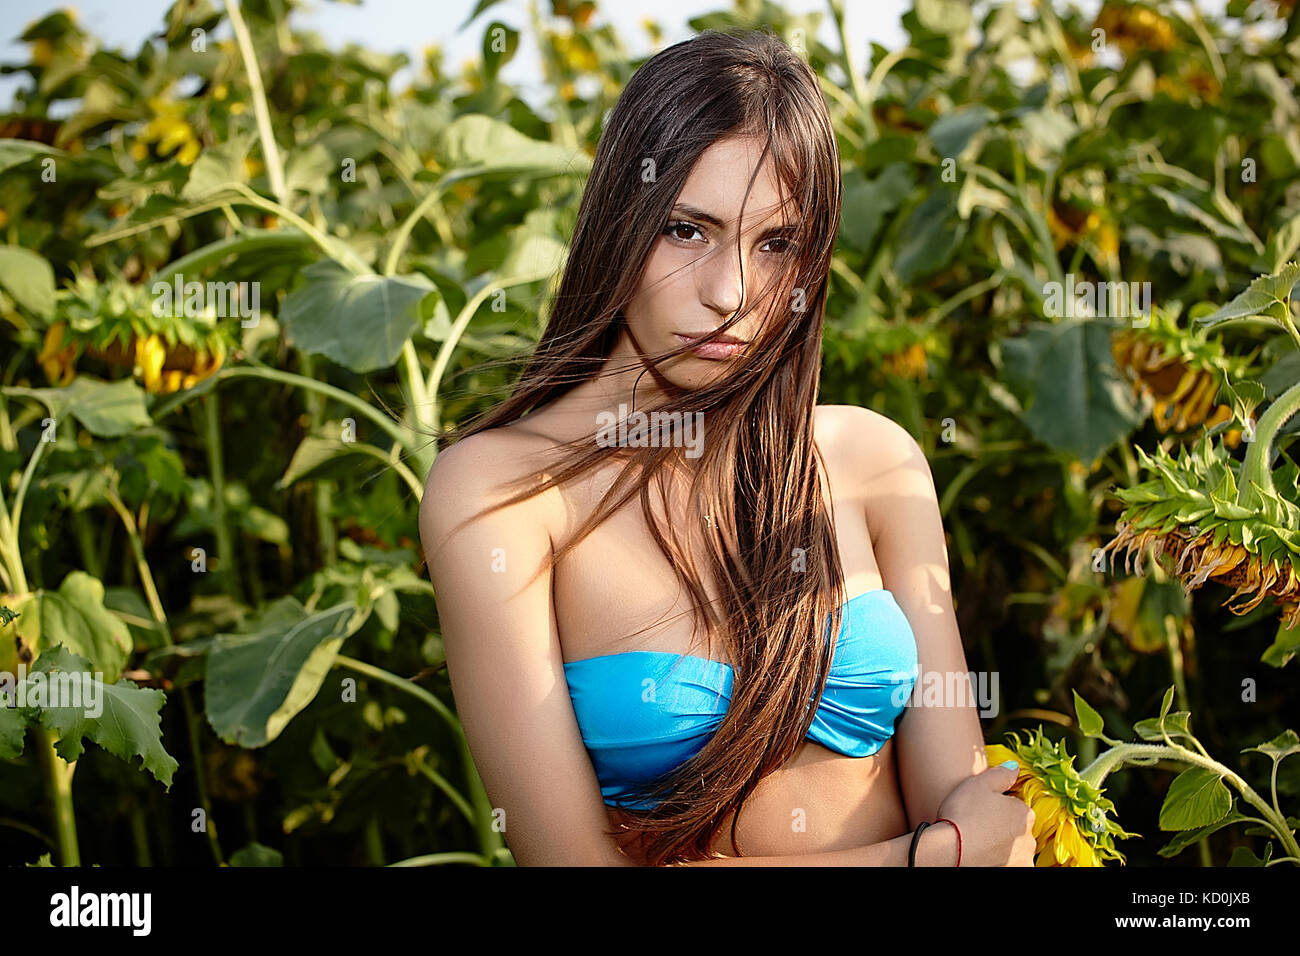 Porträt der jungen Frau im Bikini Oberteil im Sonnenblumenfeld Stockfoto